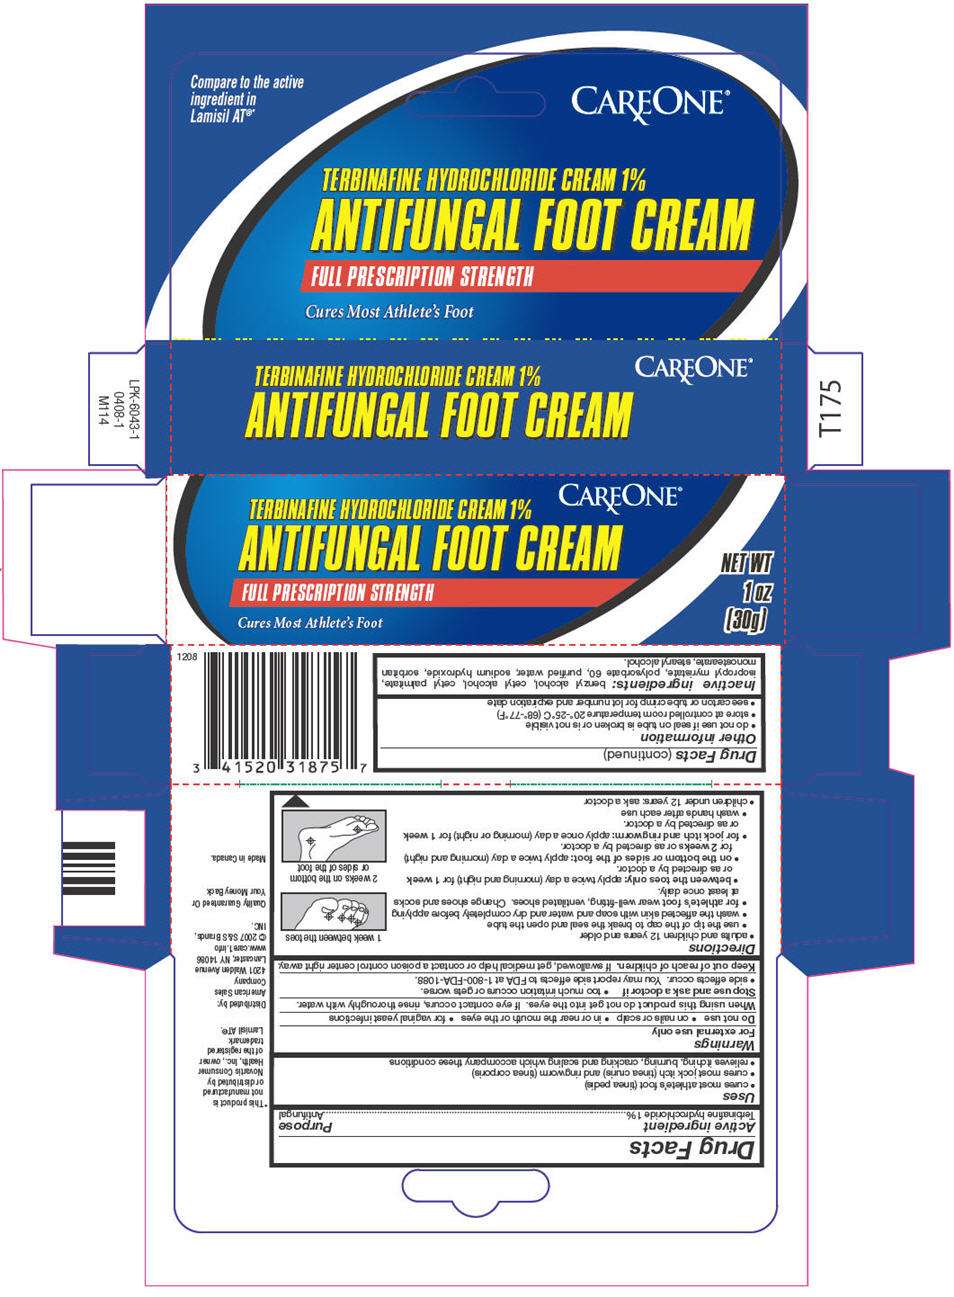 Antifungal Foot